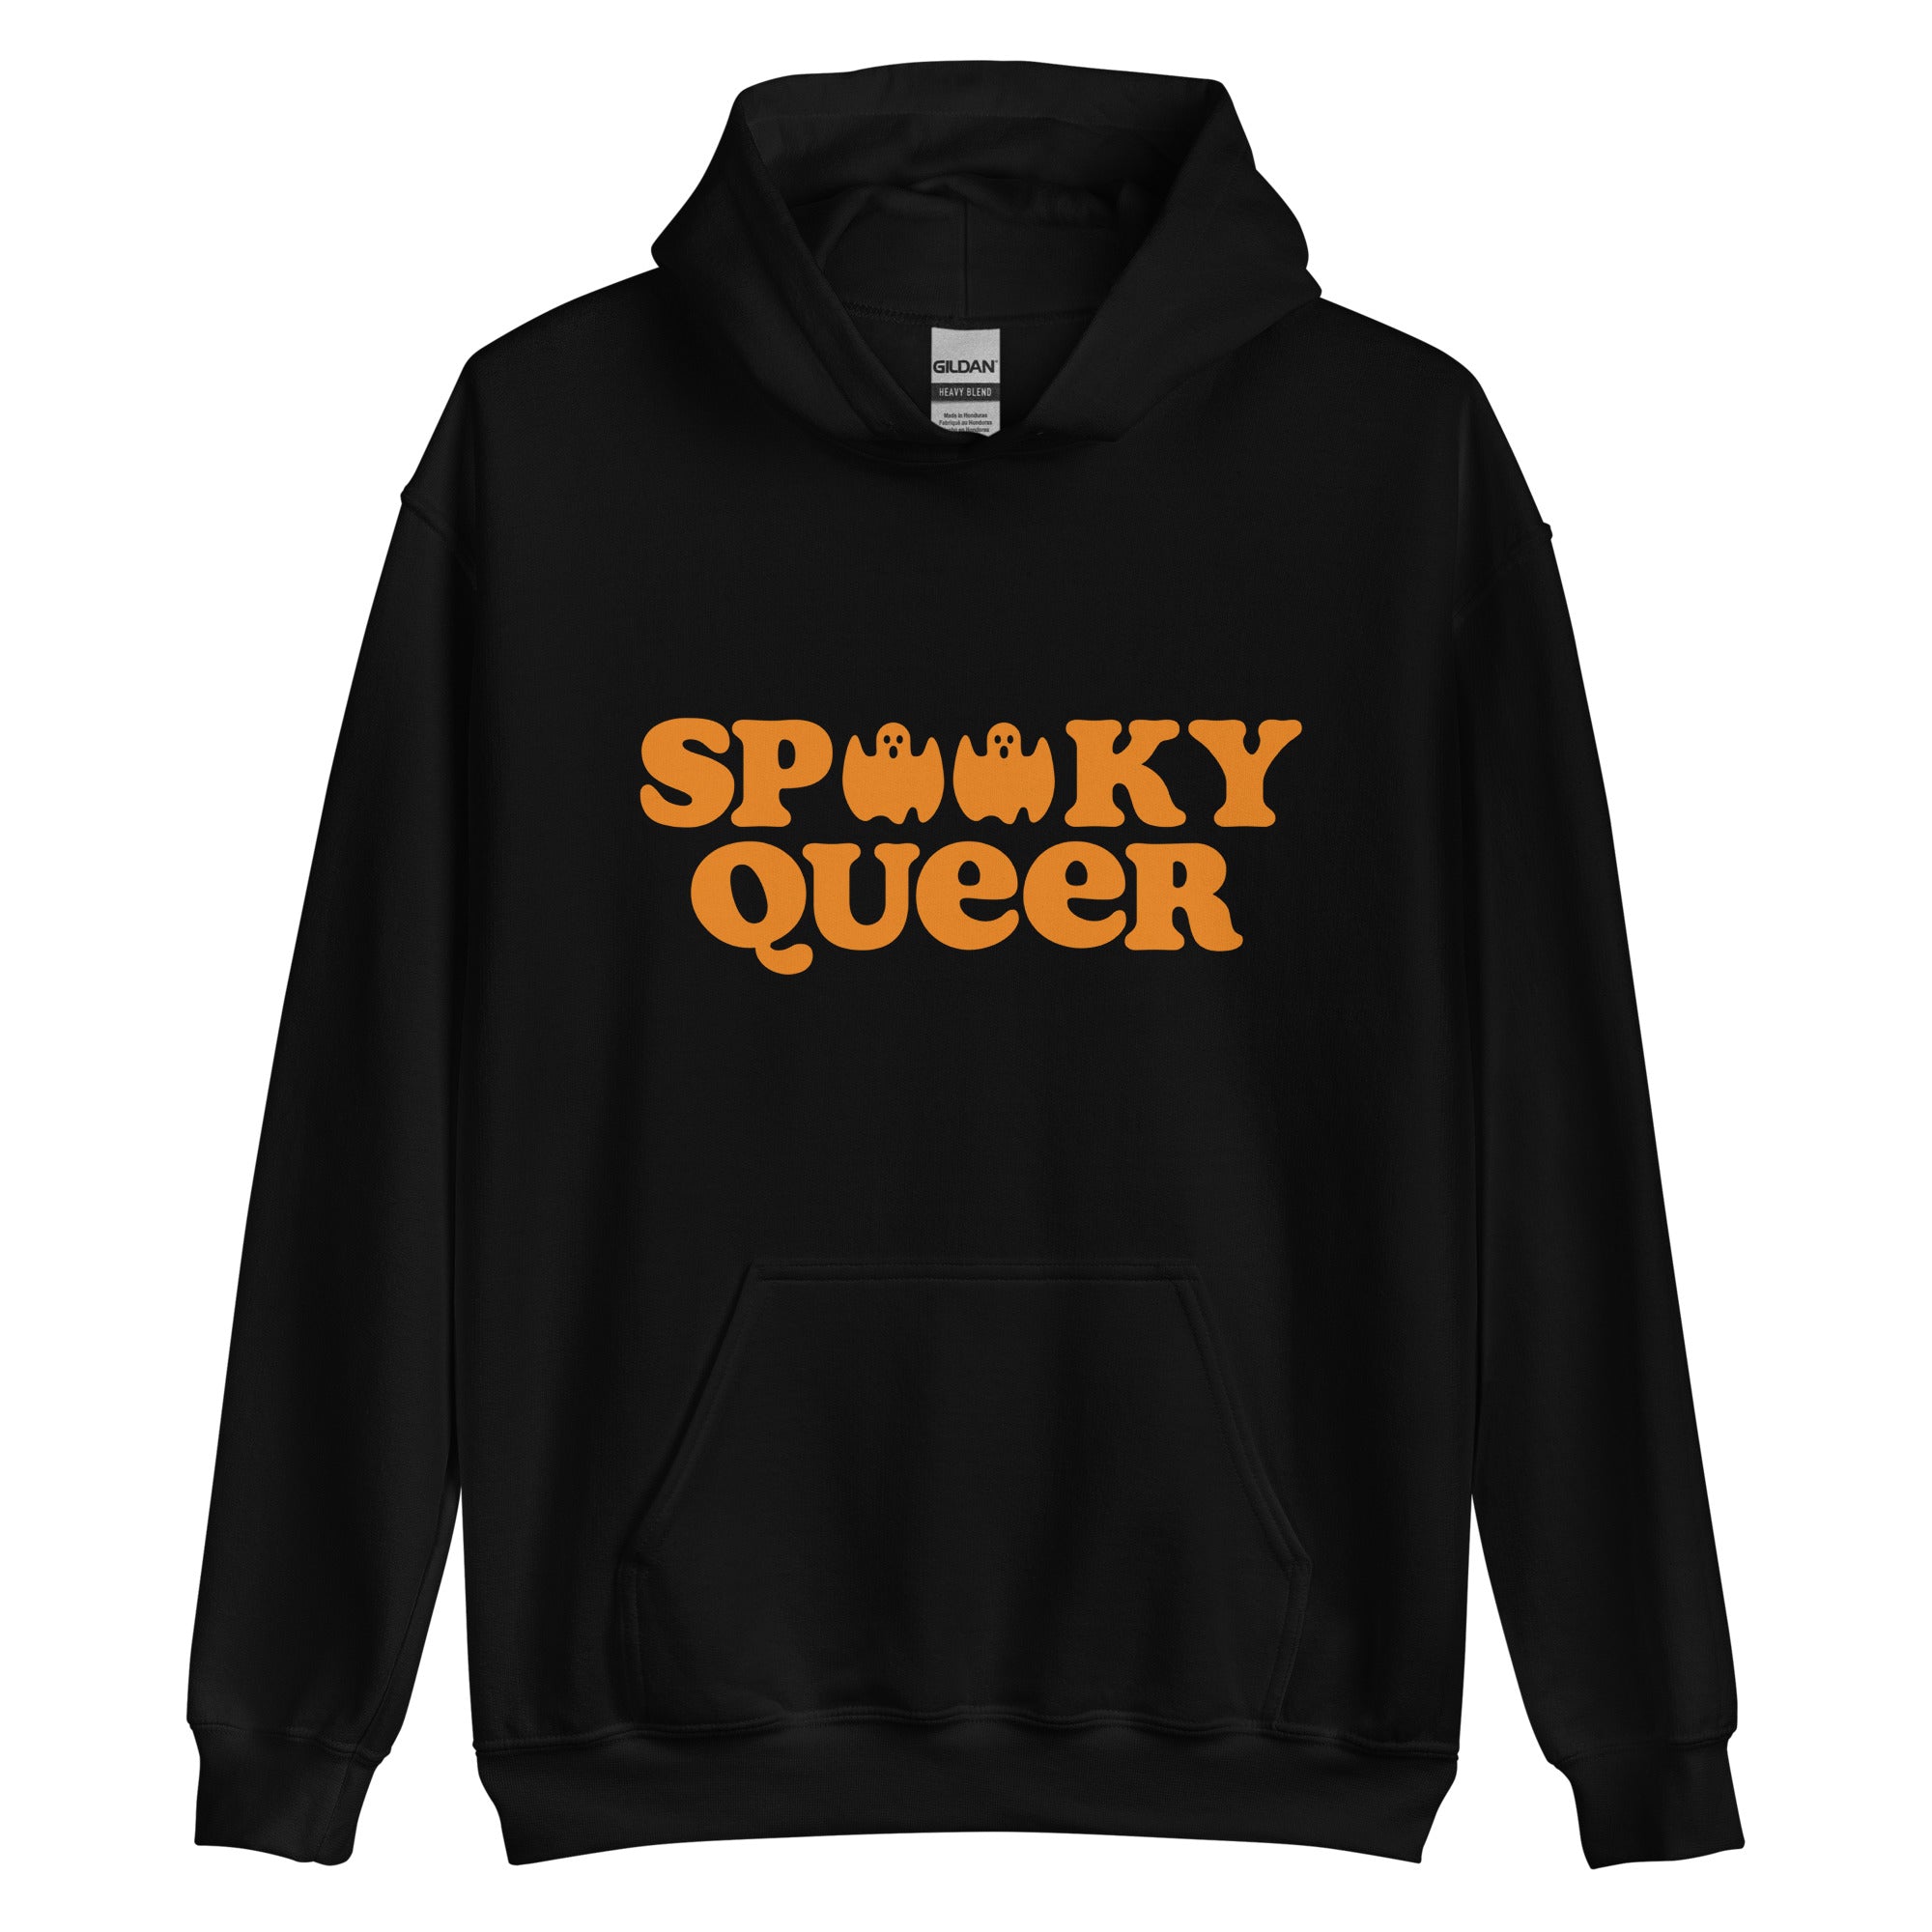 Soooky Queer Unisex Hoodie